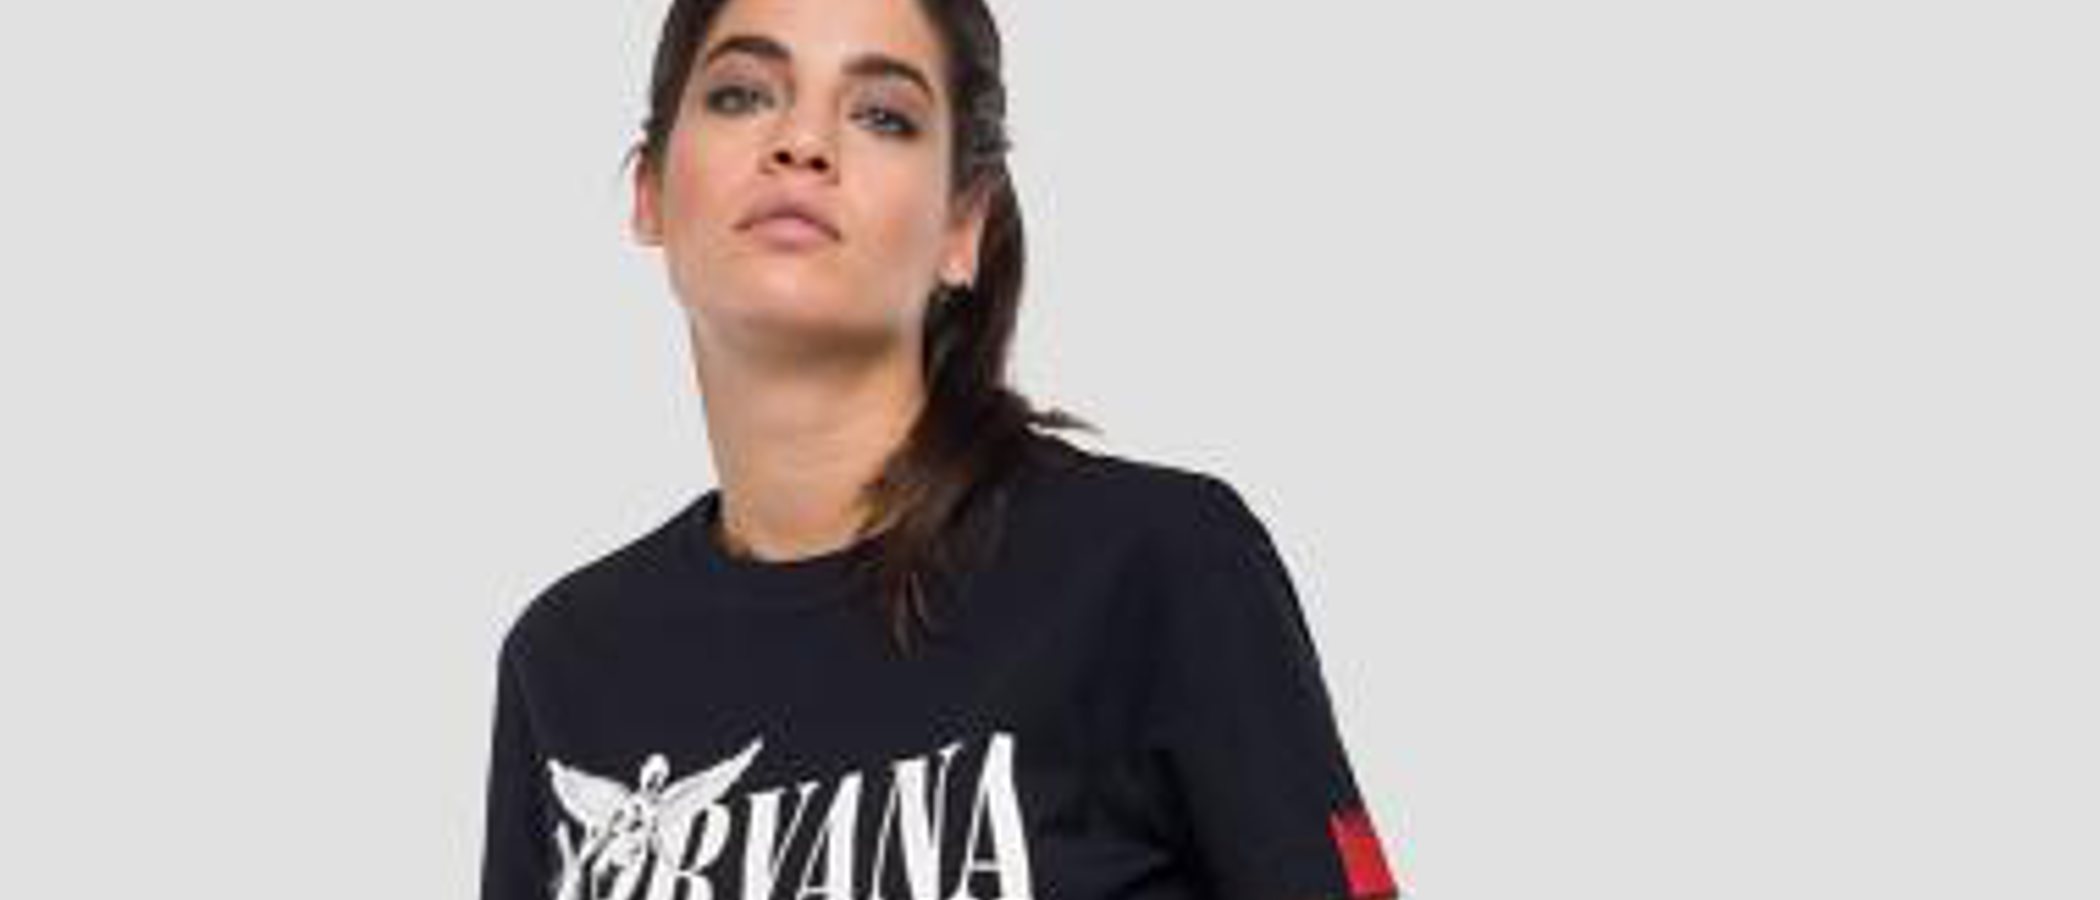 Replay rinde tributo a Nirvana con una colección cápsula de sudaderas y camisetas